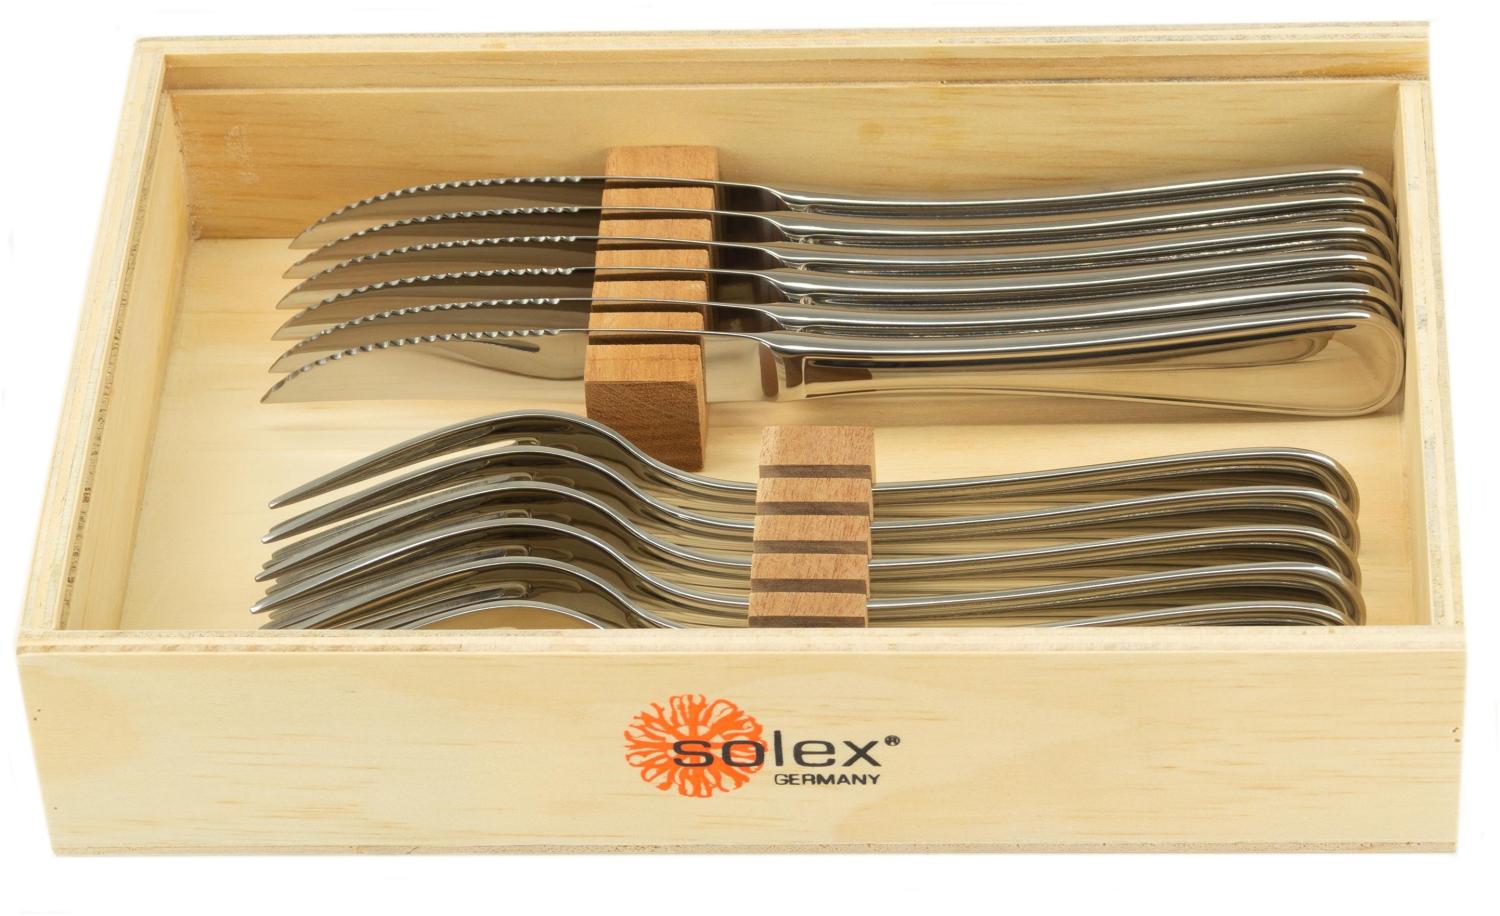 Solex Selina Steakbesteckset 12 teilig für 6 Personen in Holzbox Bild 1